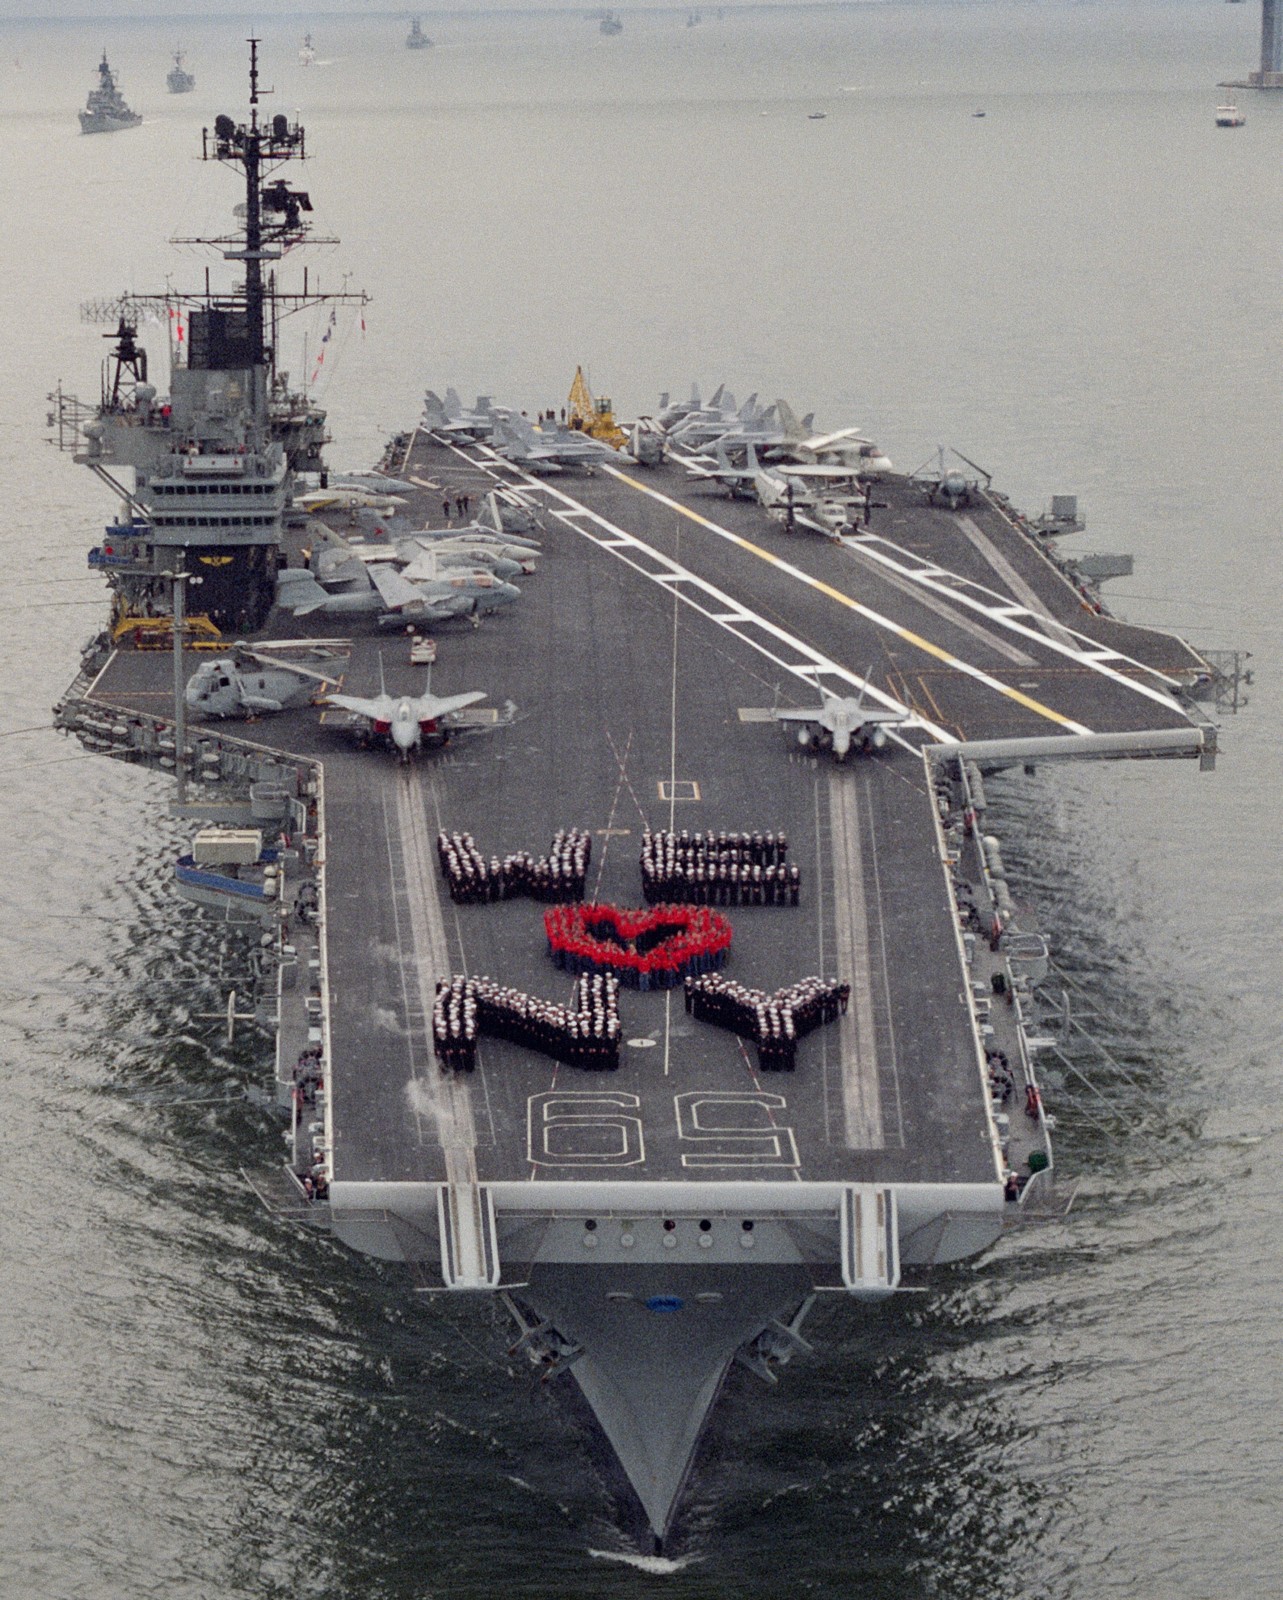 cv-59 uss forrestal aircraft carrier us navy fleet week new york 1989 103